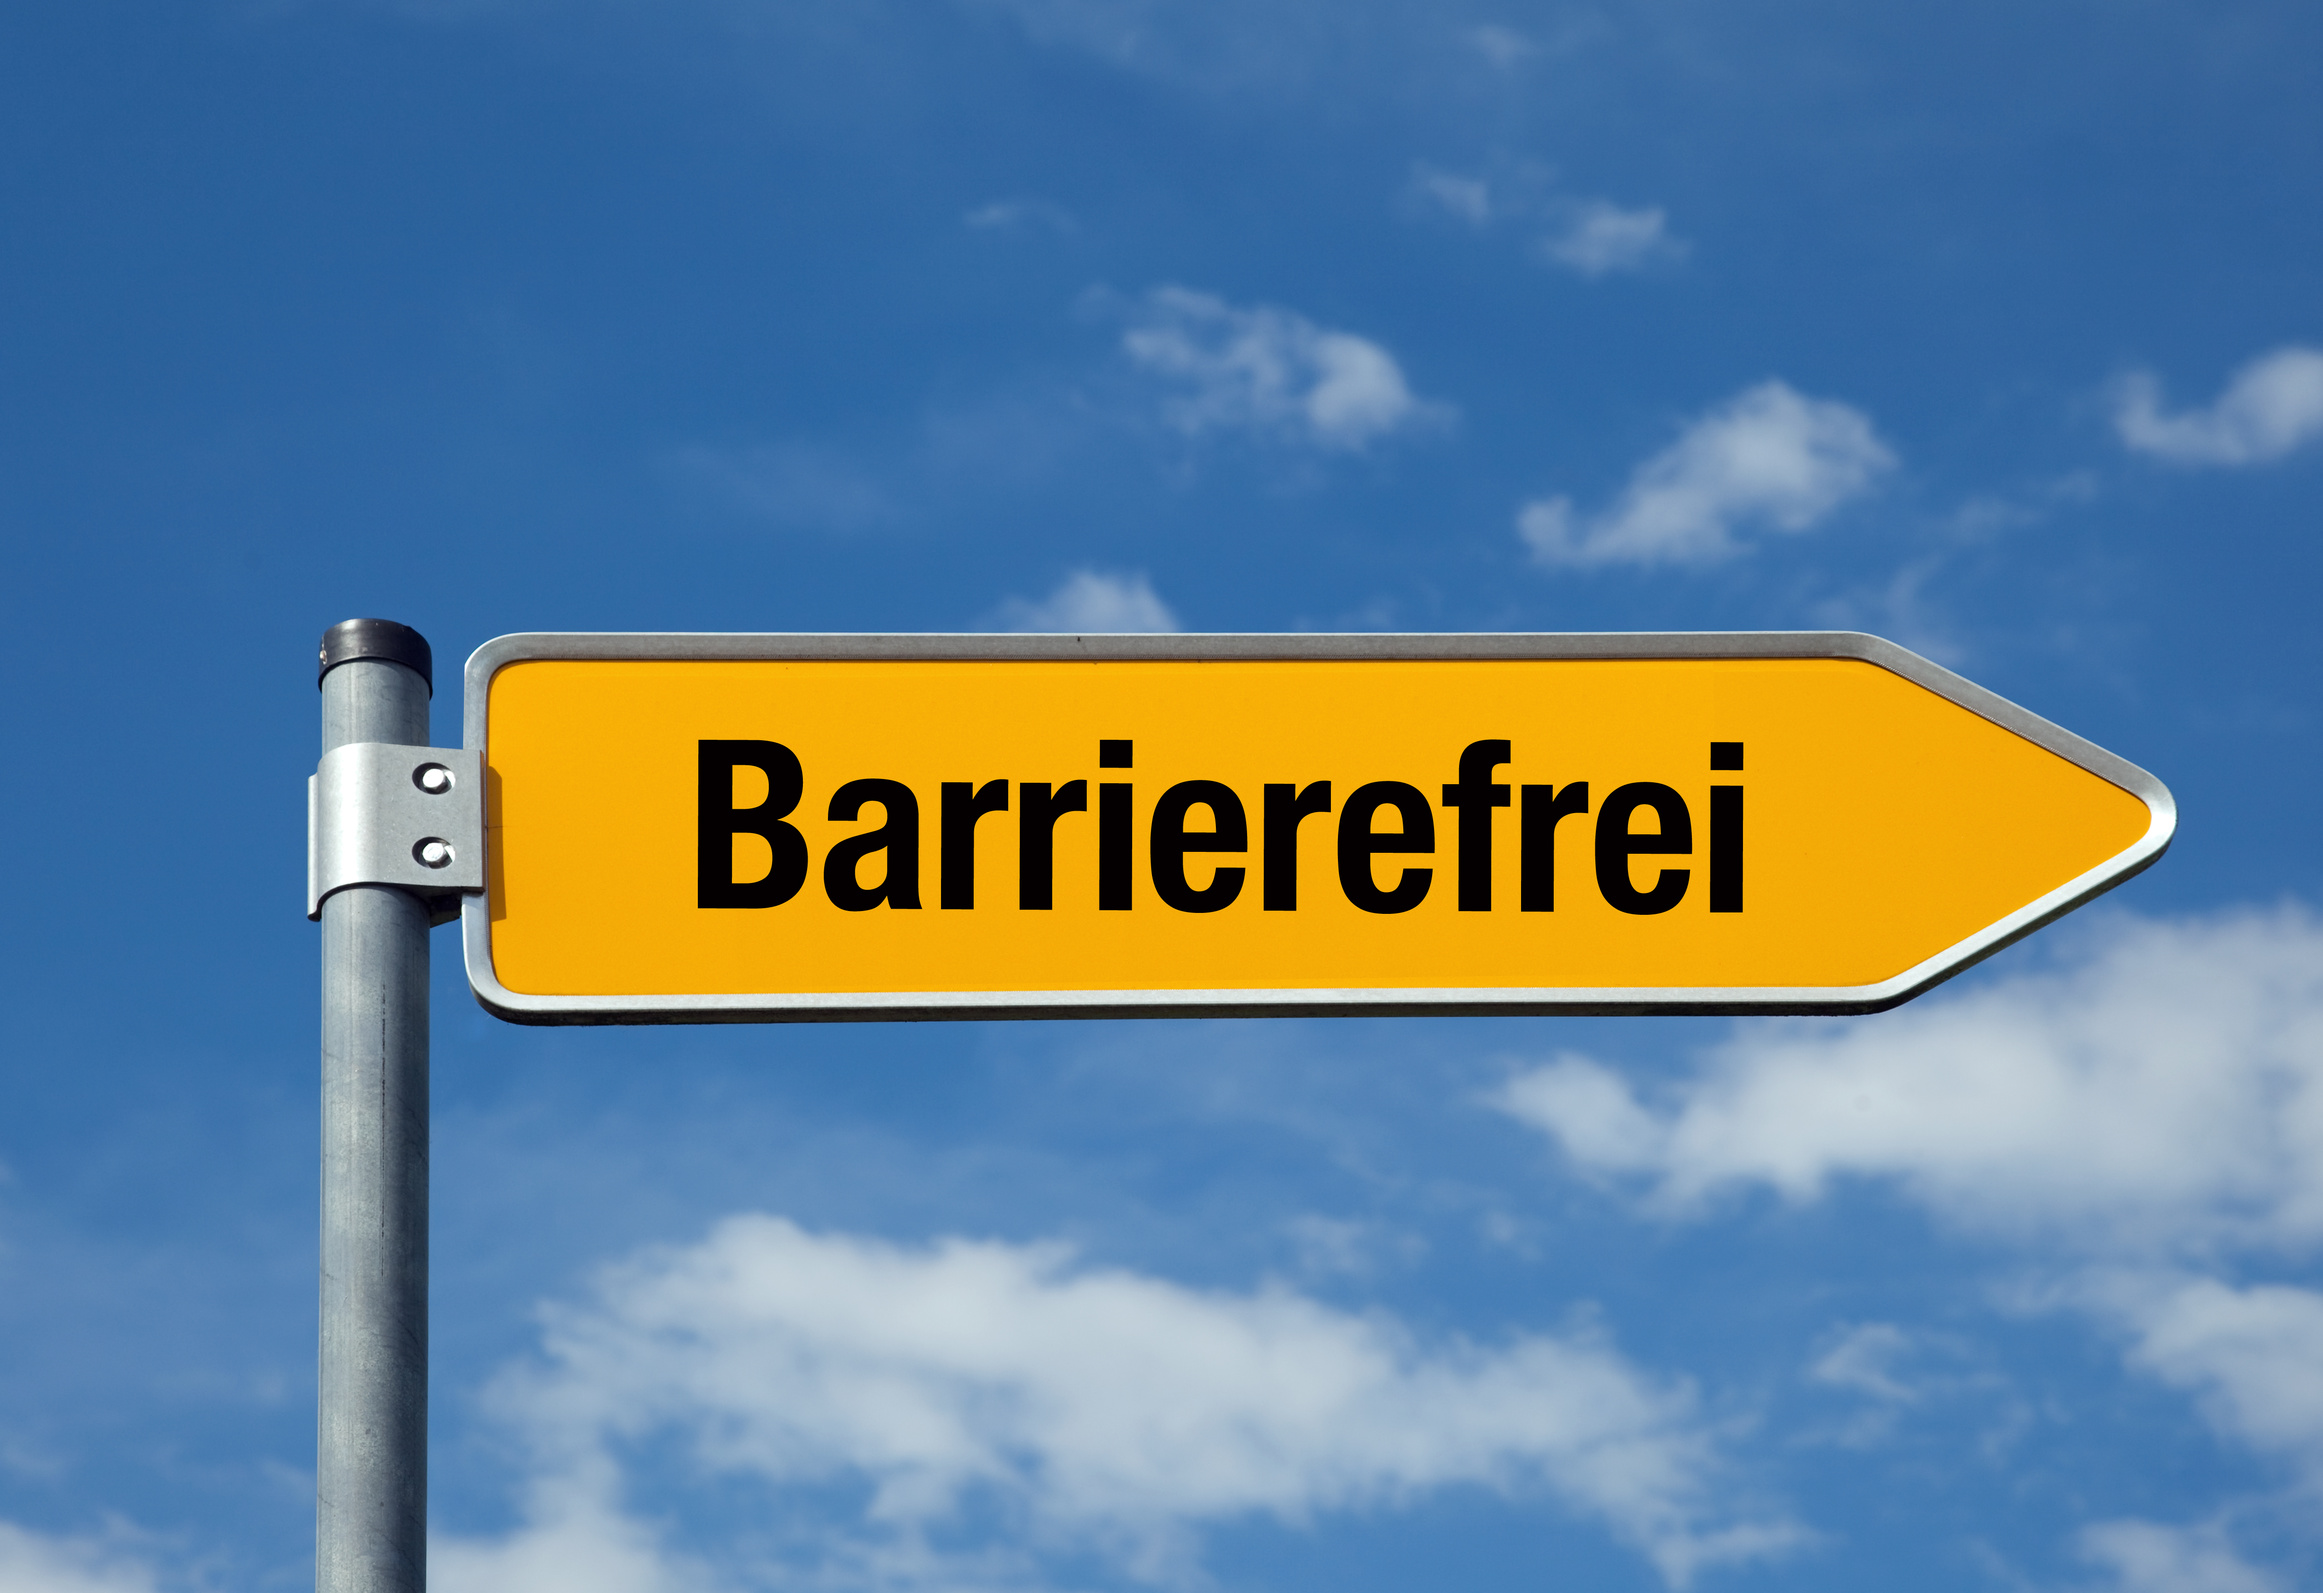 Straßenschild in Pfeilform mit der Aufschrift "barrierefrei"